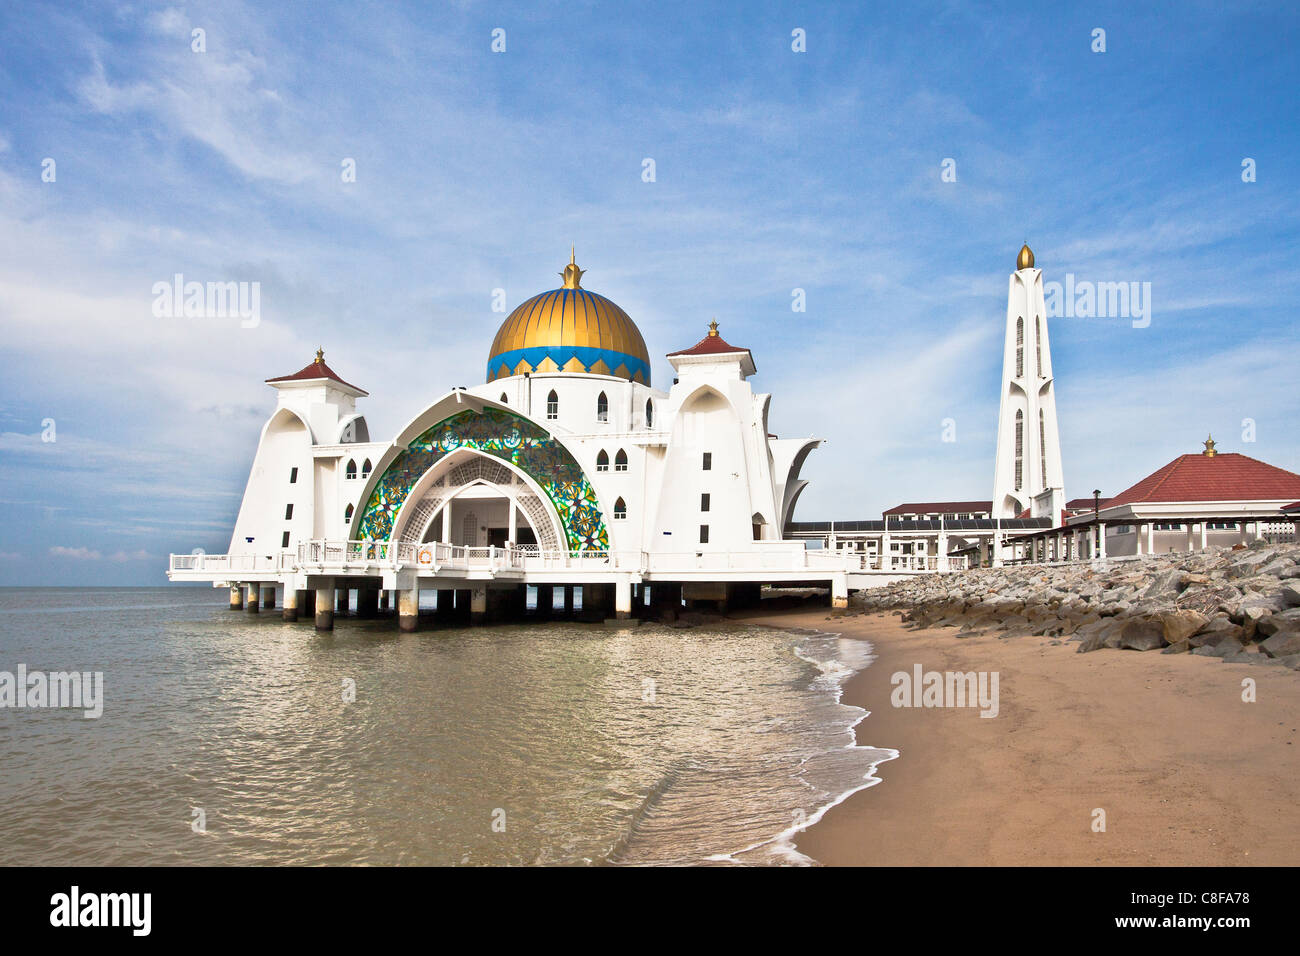 Melaka, Malaysia, Asien, Stadt, Melaka Straße Moschee, Malacca Straits Moschee, Moschee, Melaka, Meer, Strand, Meer, Kuppel, Golden, Stockfoto